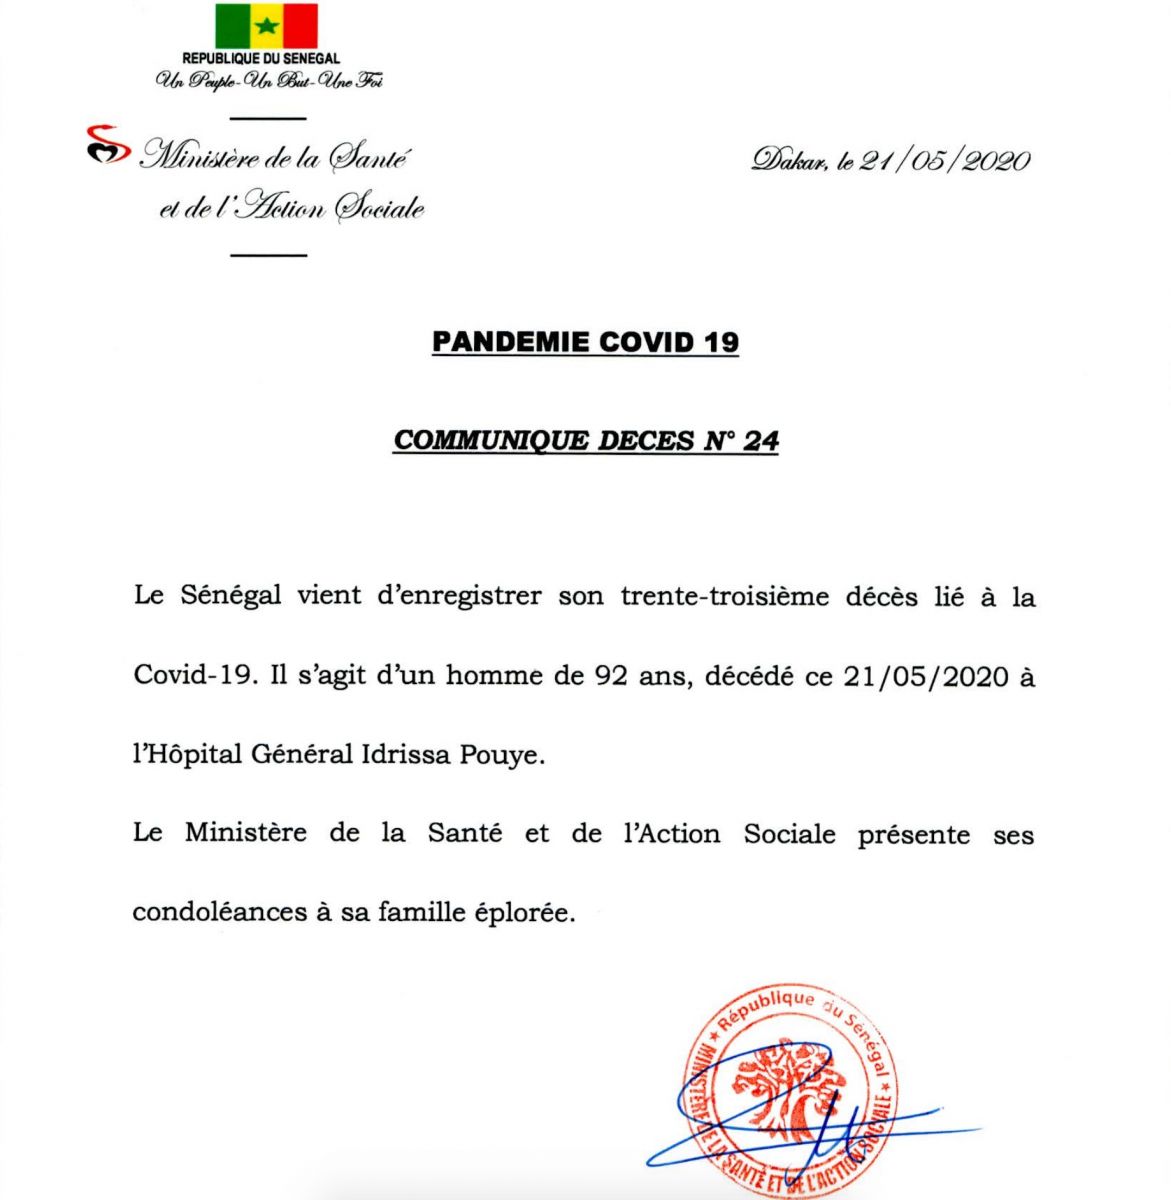 Urgent-Covid-19 : Le Sénégal enregistre un 3e décès en quelques heures